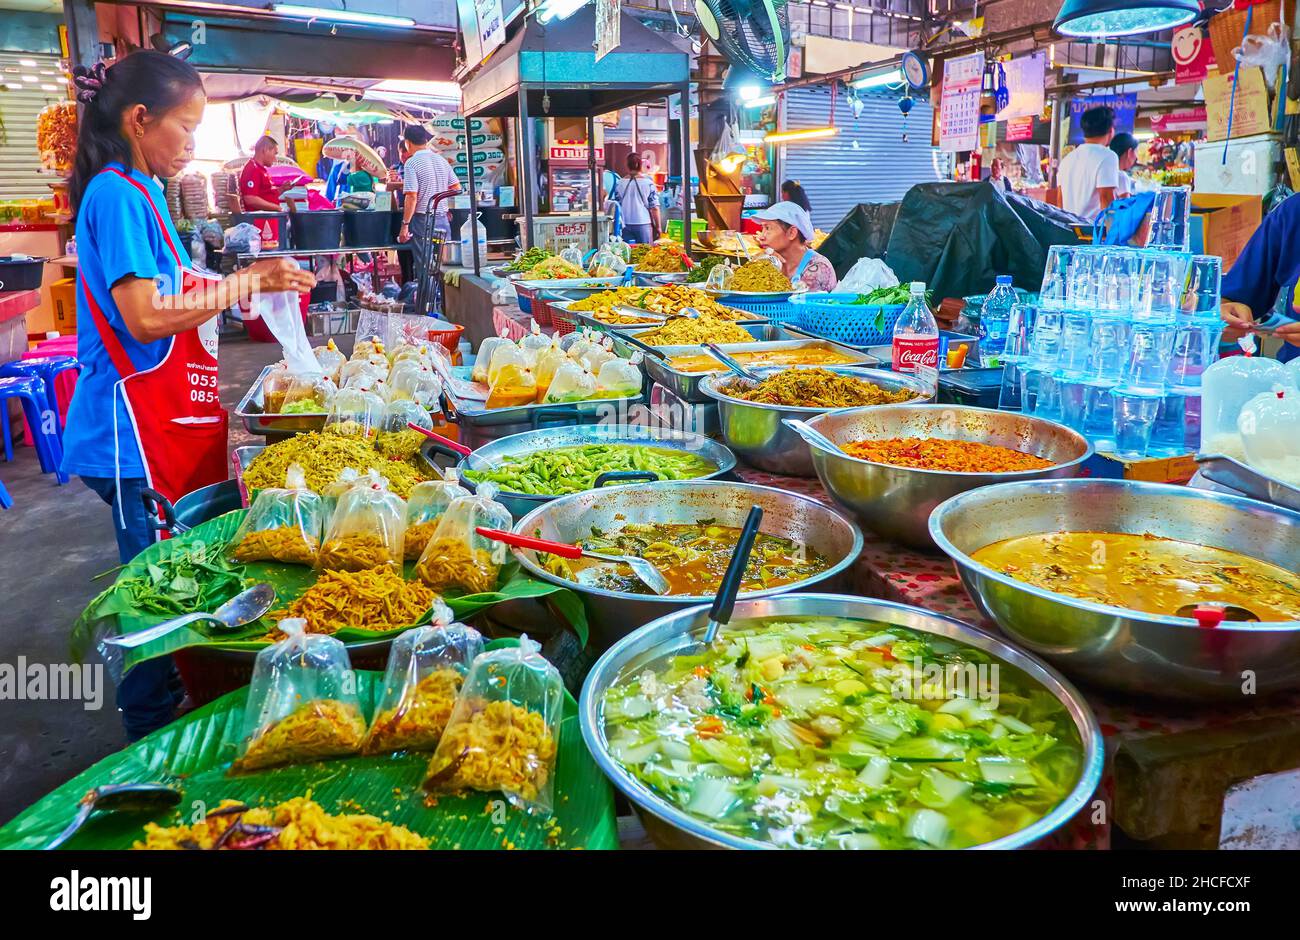 CHIANG mai, THAILANDIA - 4 MAGGIO 2019: Le bancarelle del mercato Gate offrono una vasta gamma di cibi locali - verdure stufate, zuppe e tagliatelle da asporto, il mese di maggio Foto Stock